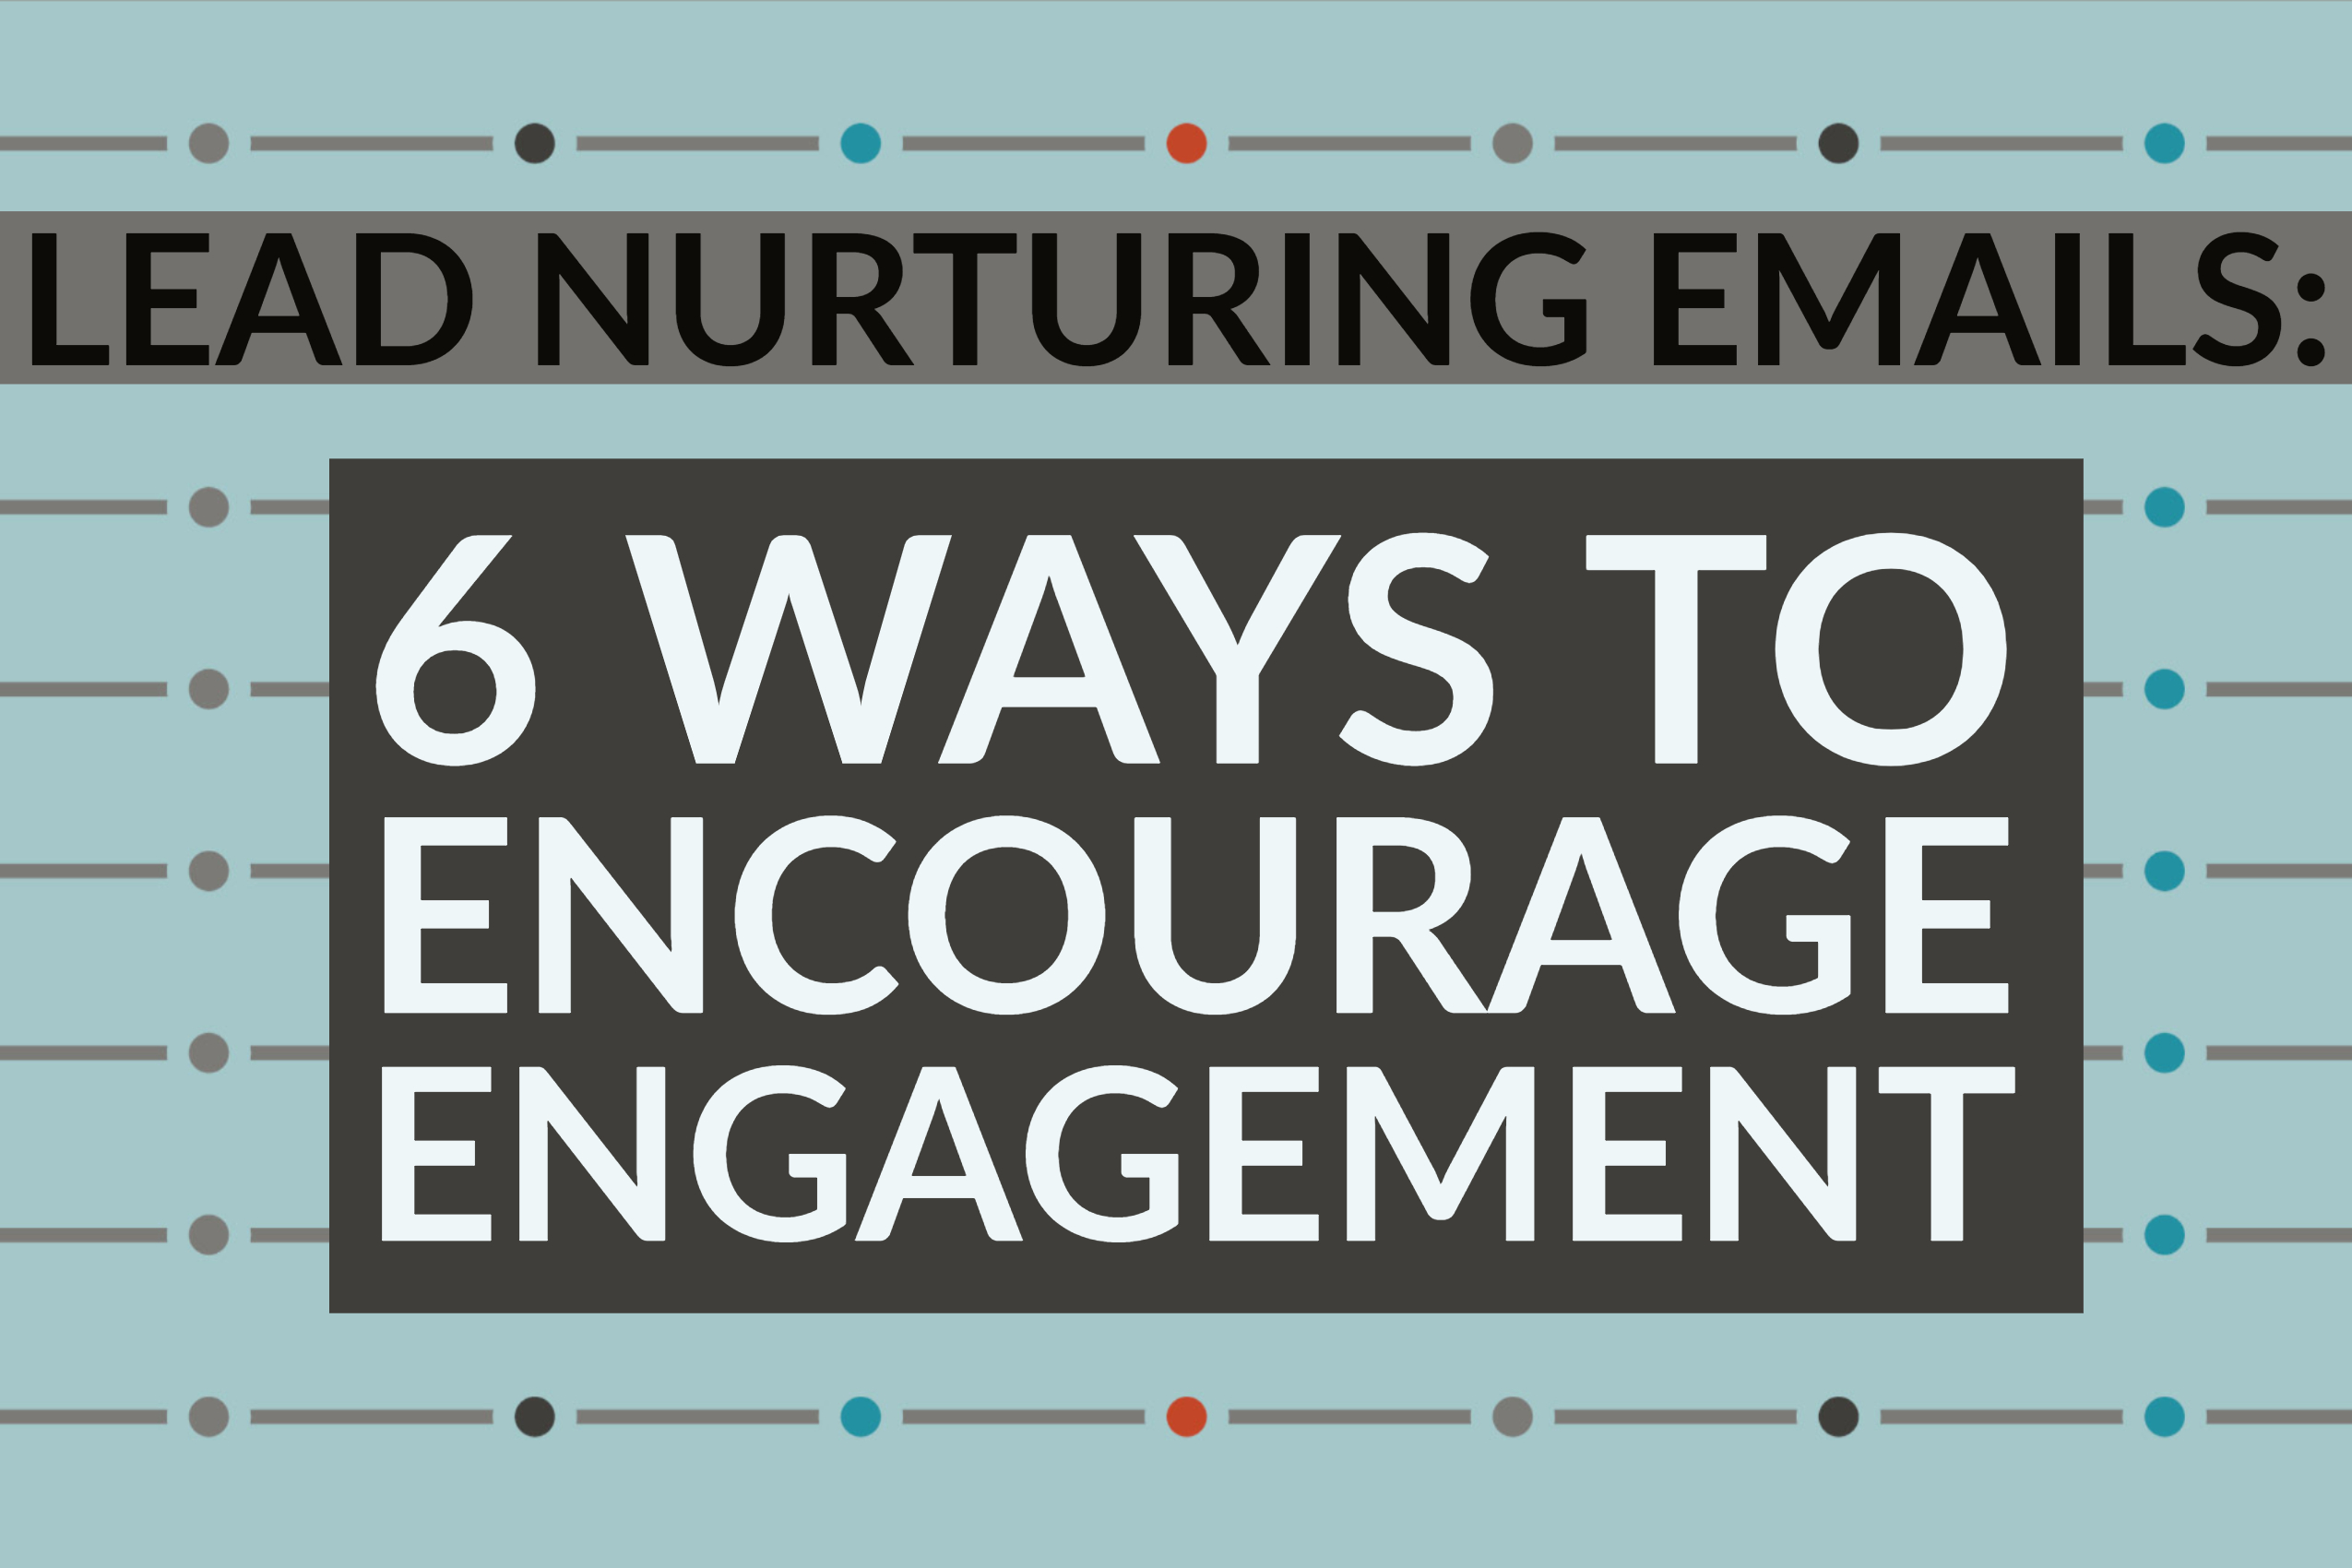 Lead Nurturing Emails: 6 Ways To Encourage Engagement